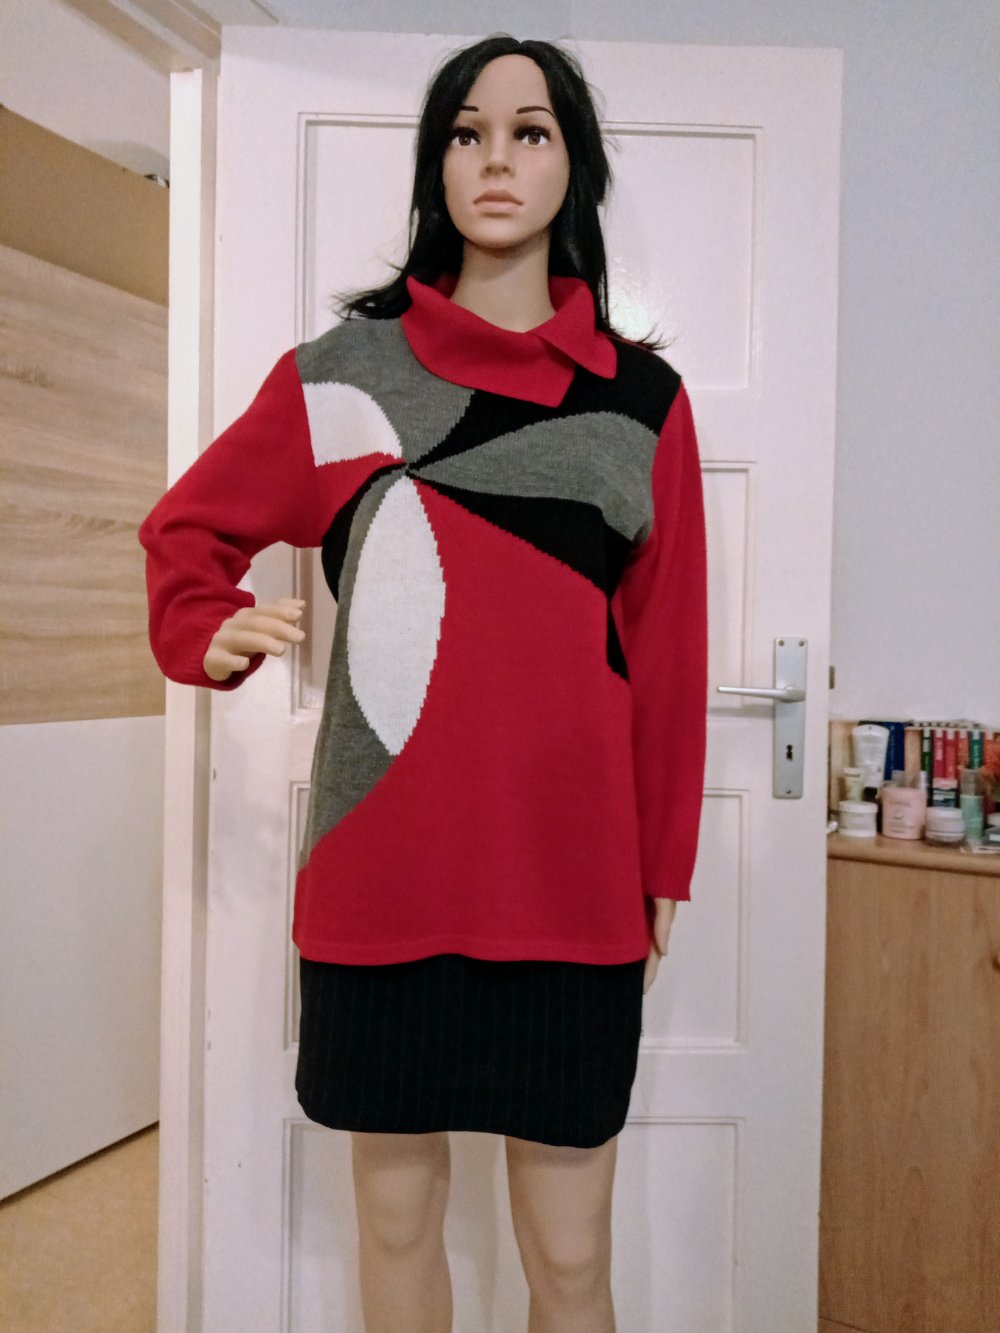 Sehr schöner Pullover in rot